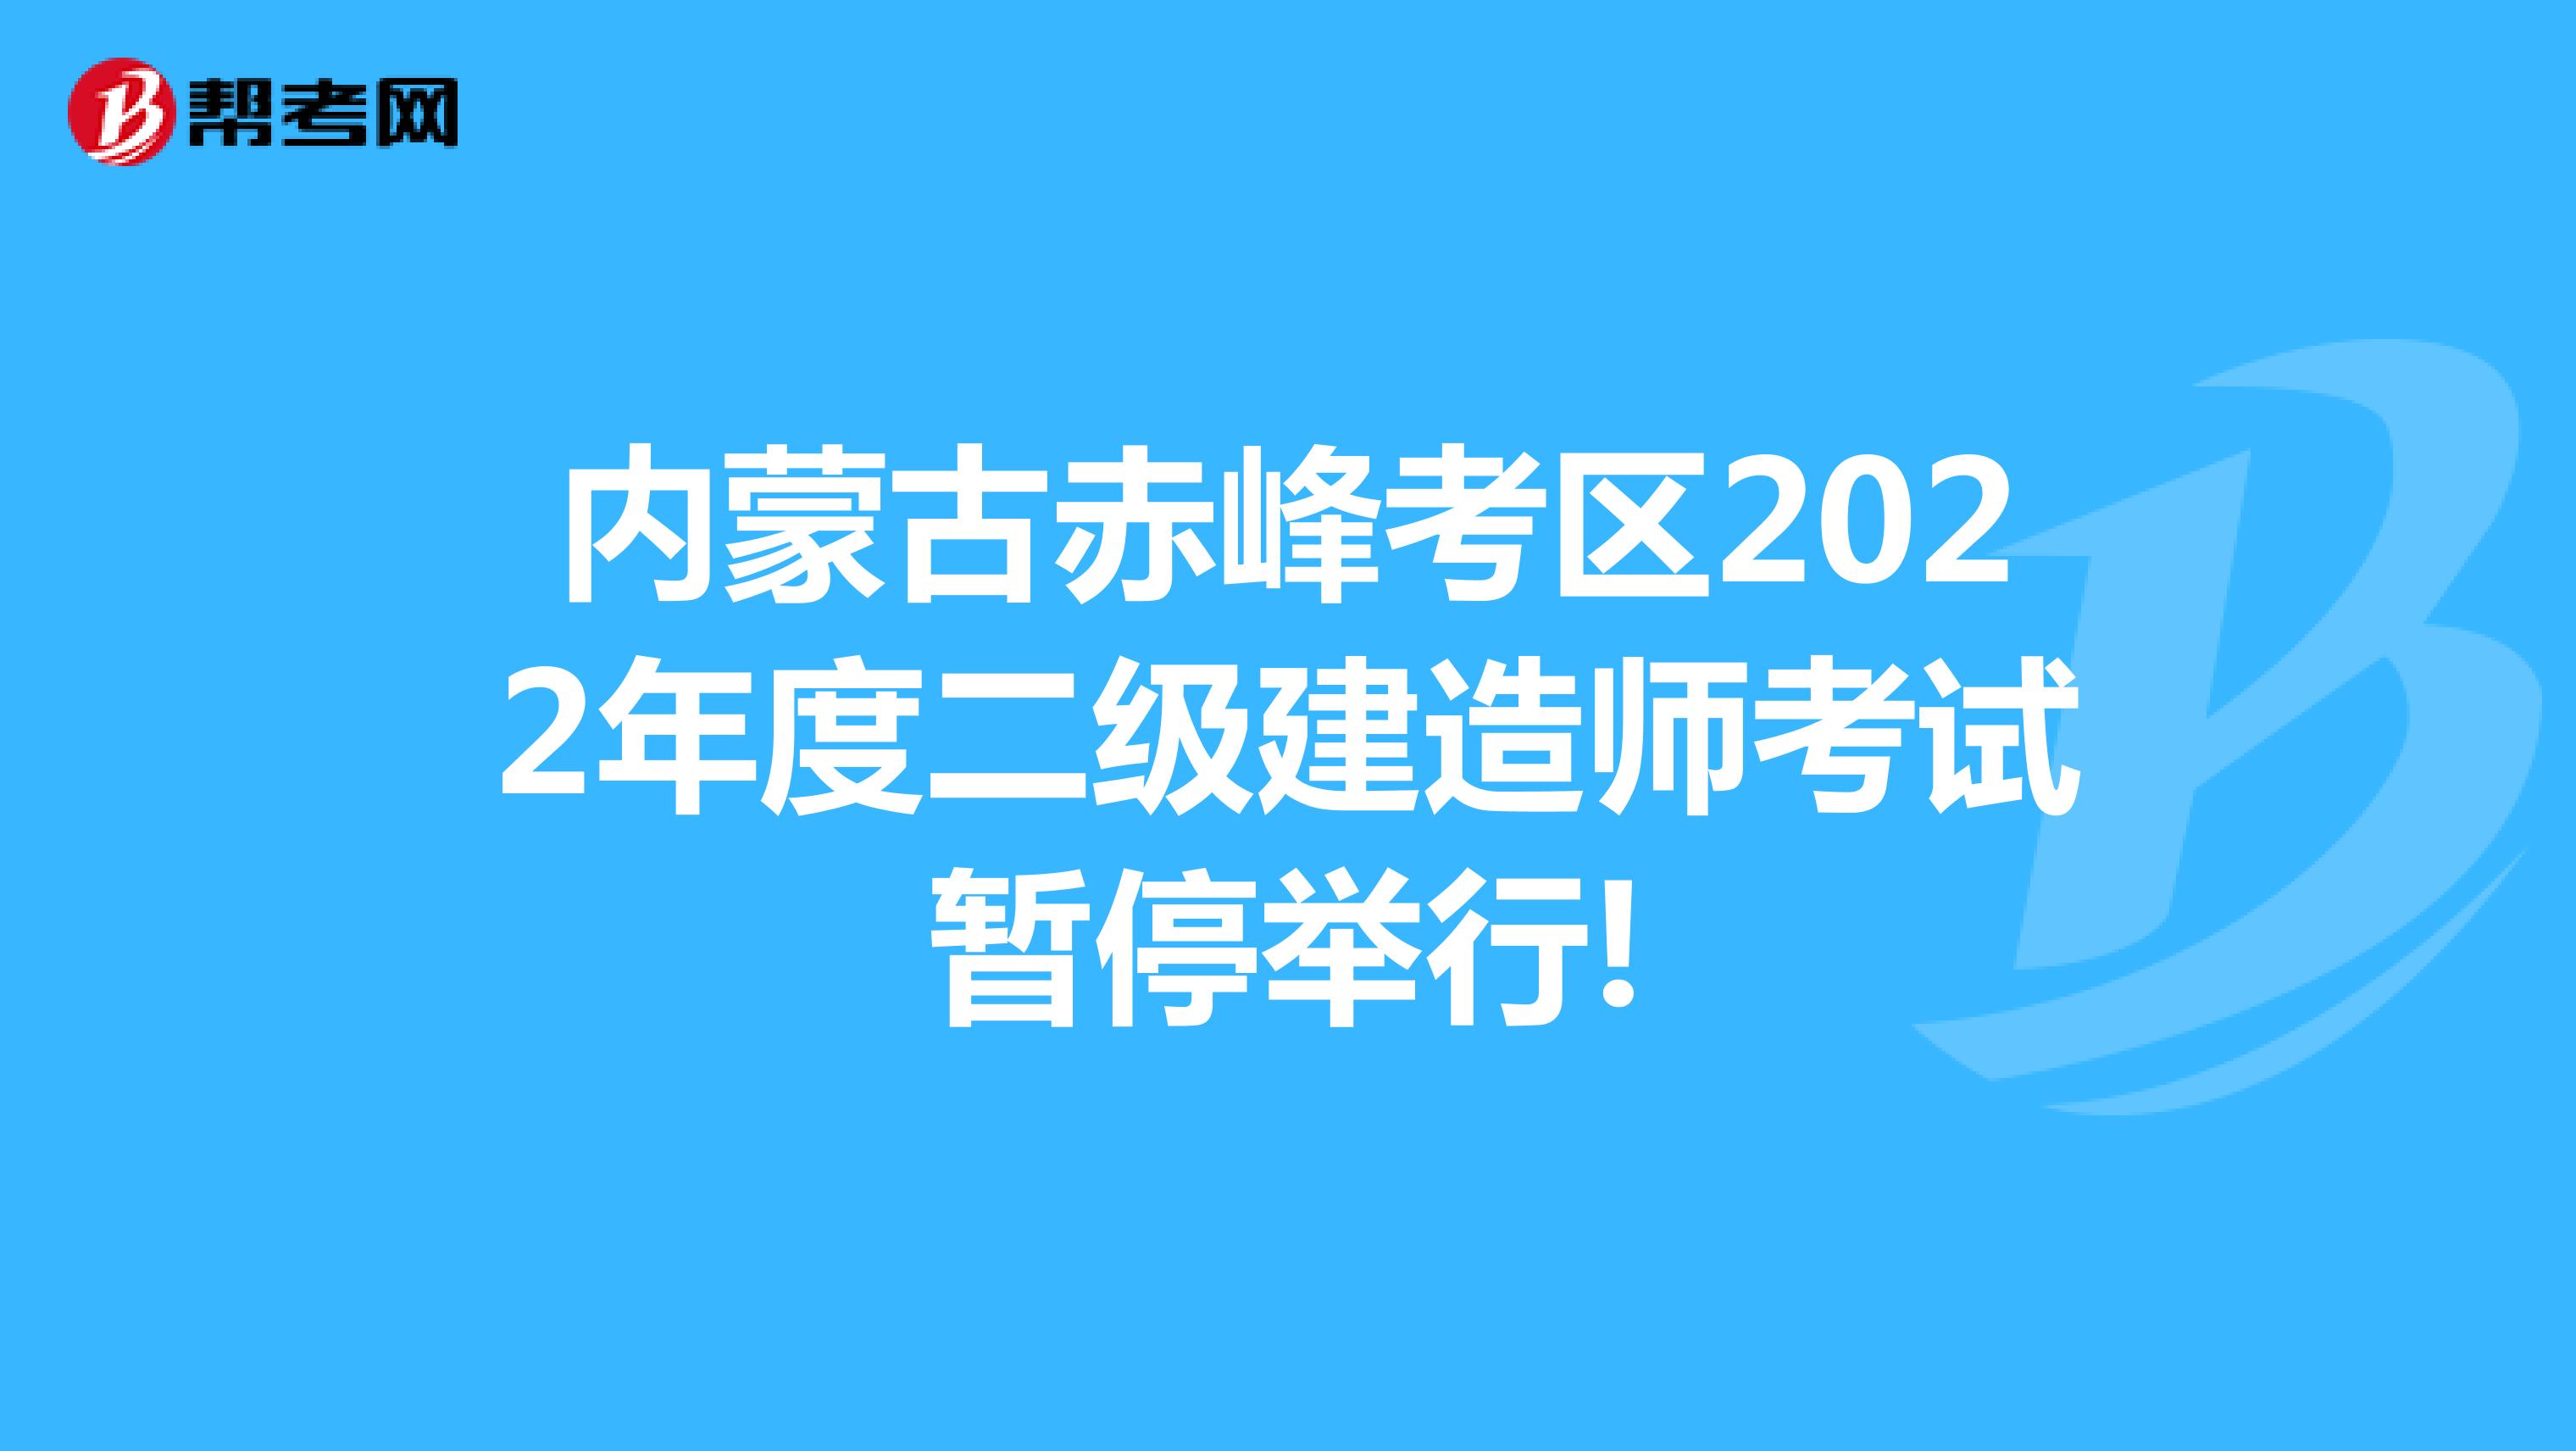 内蒙古赤峰考区2022年度二级建造师考试暂停举行!